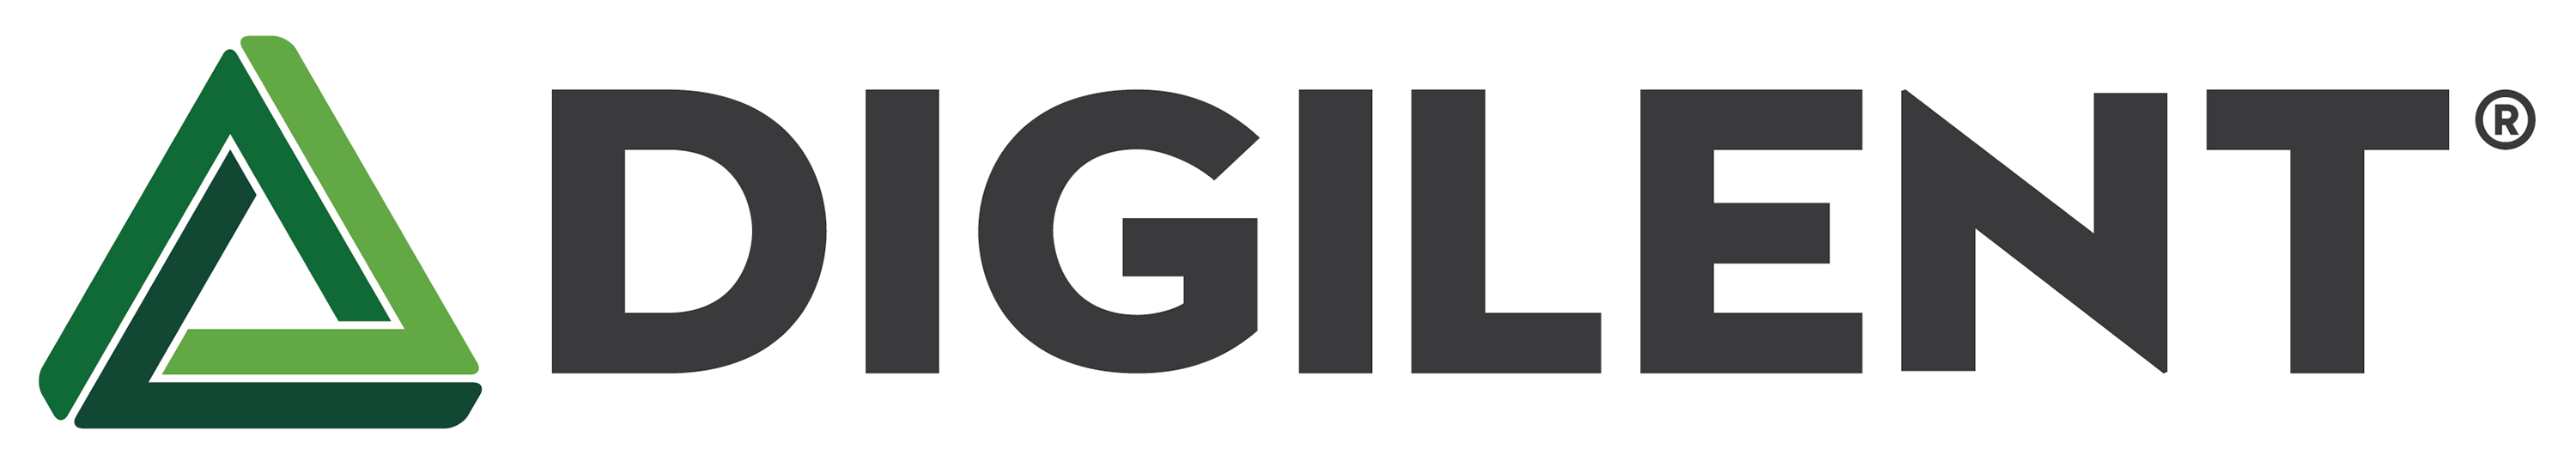 digilent-logo2015-color_on_white-3000.png